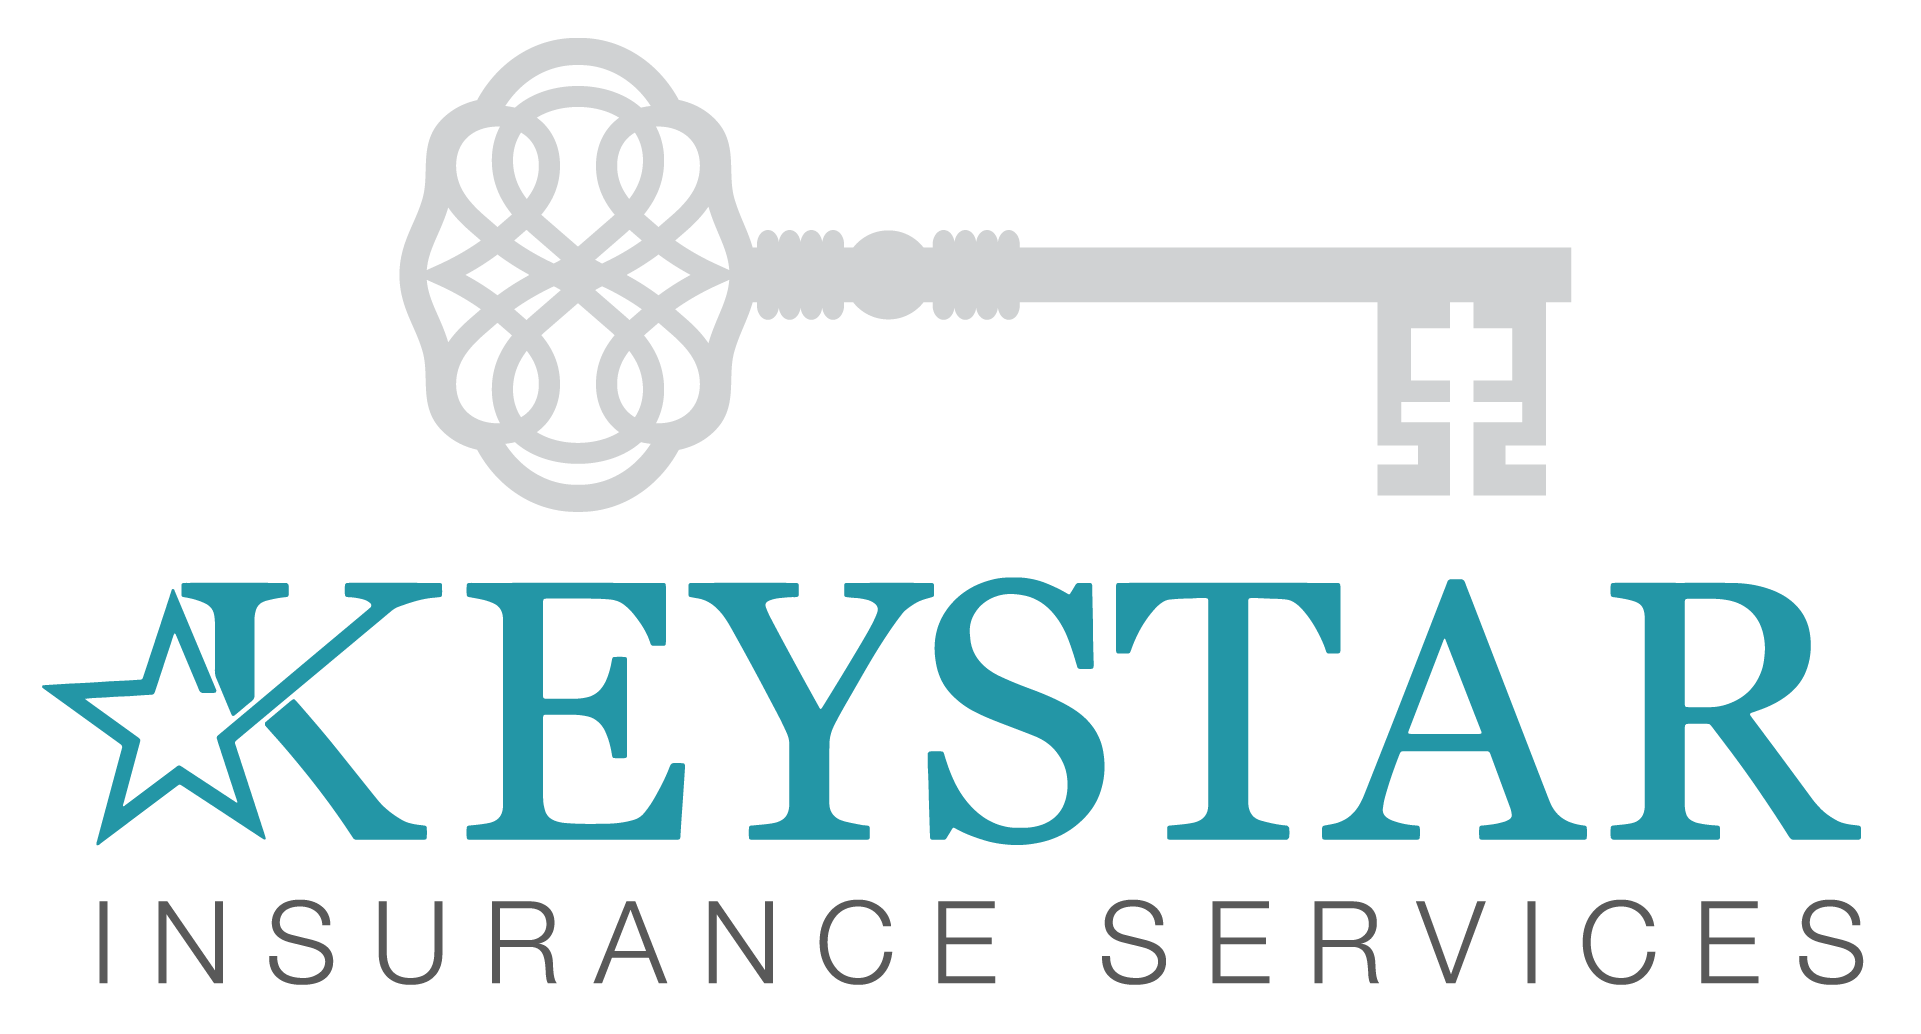 Keystar Insurance Services